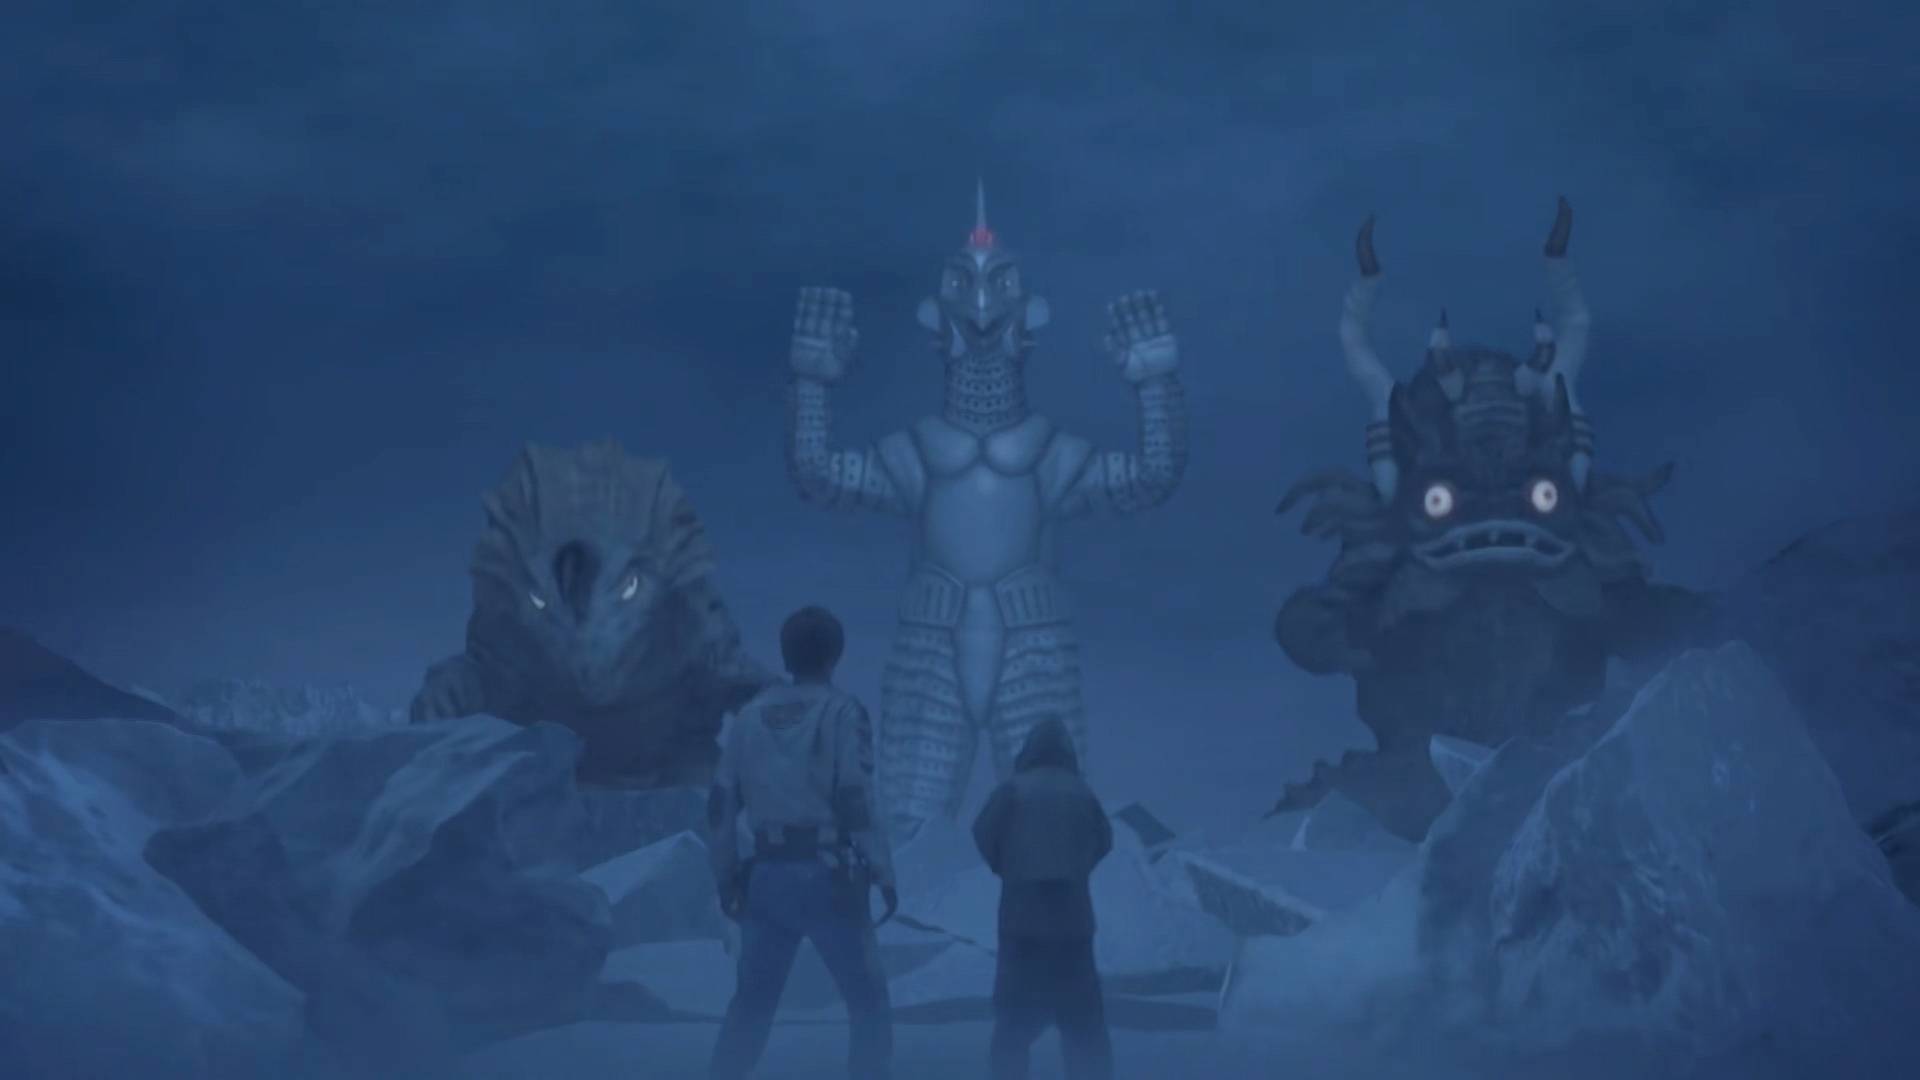 原创泽塔赛文的胶囊怪兽乌英达姆在泽塔剧中作为机器人登场